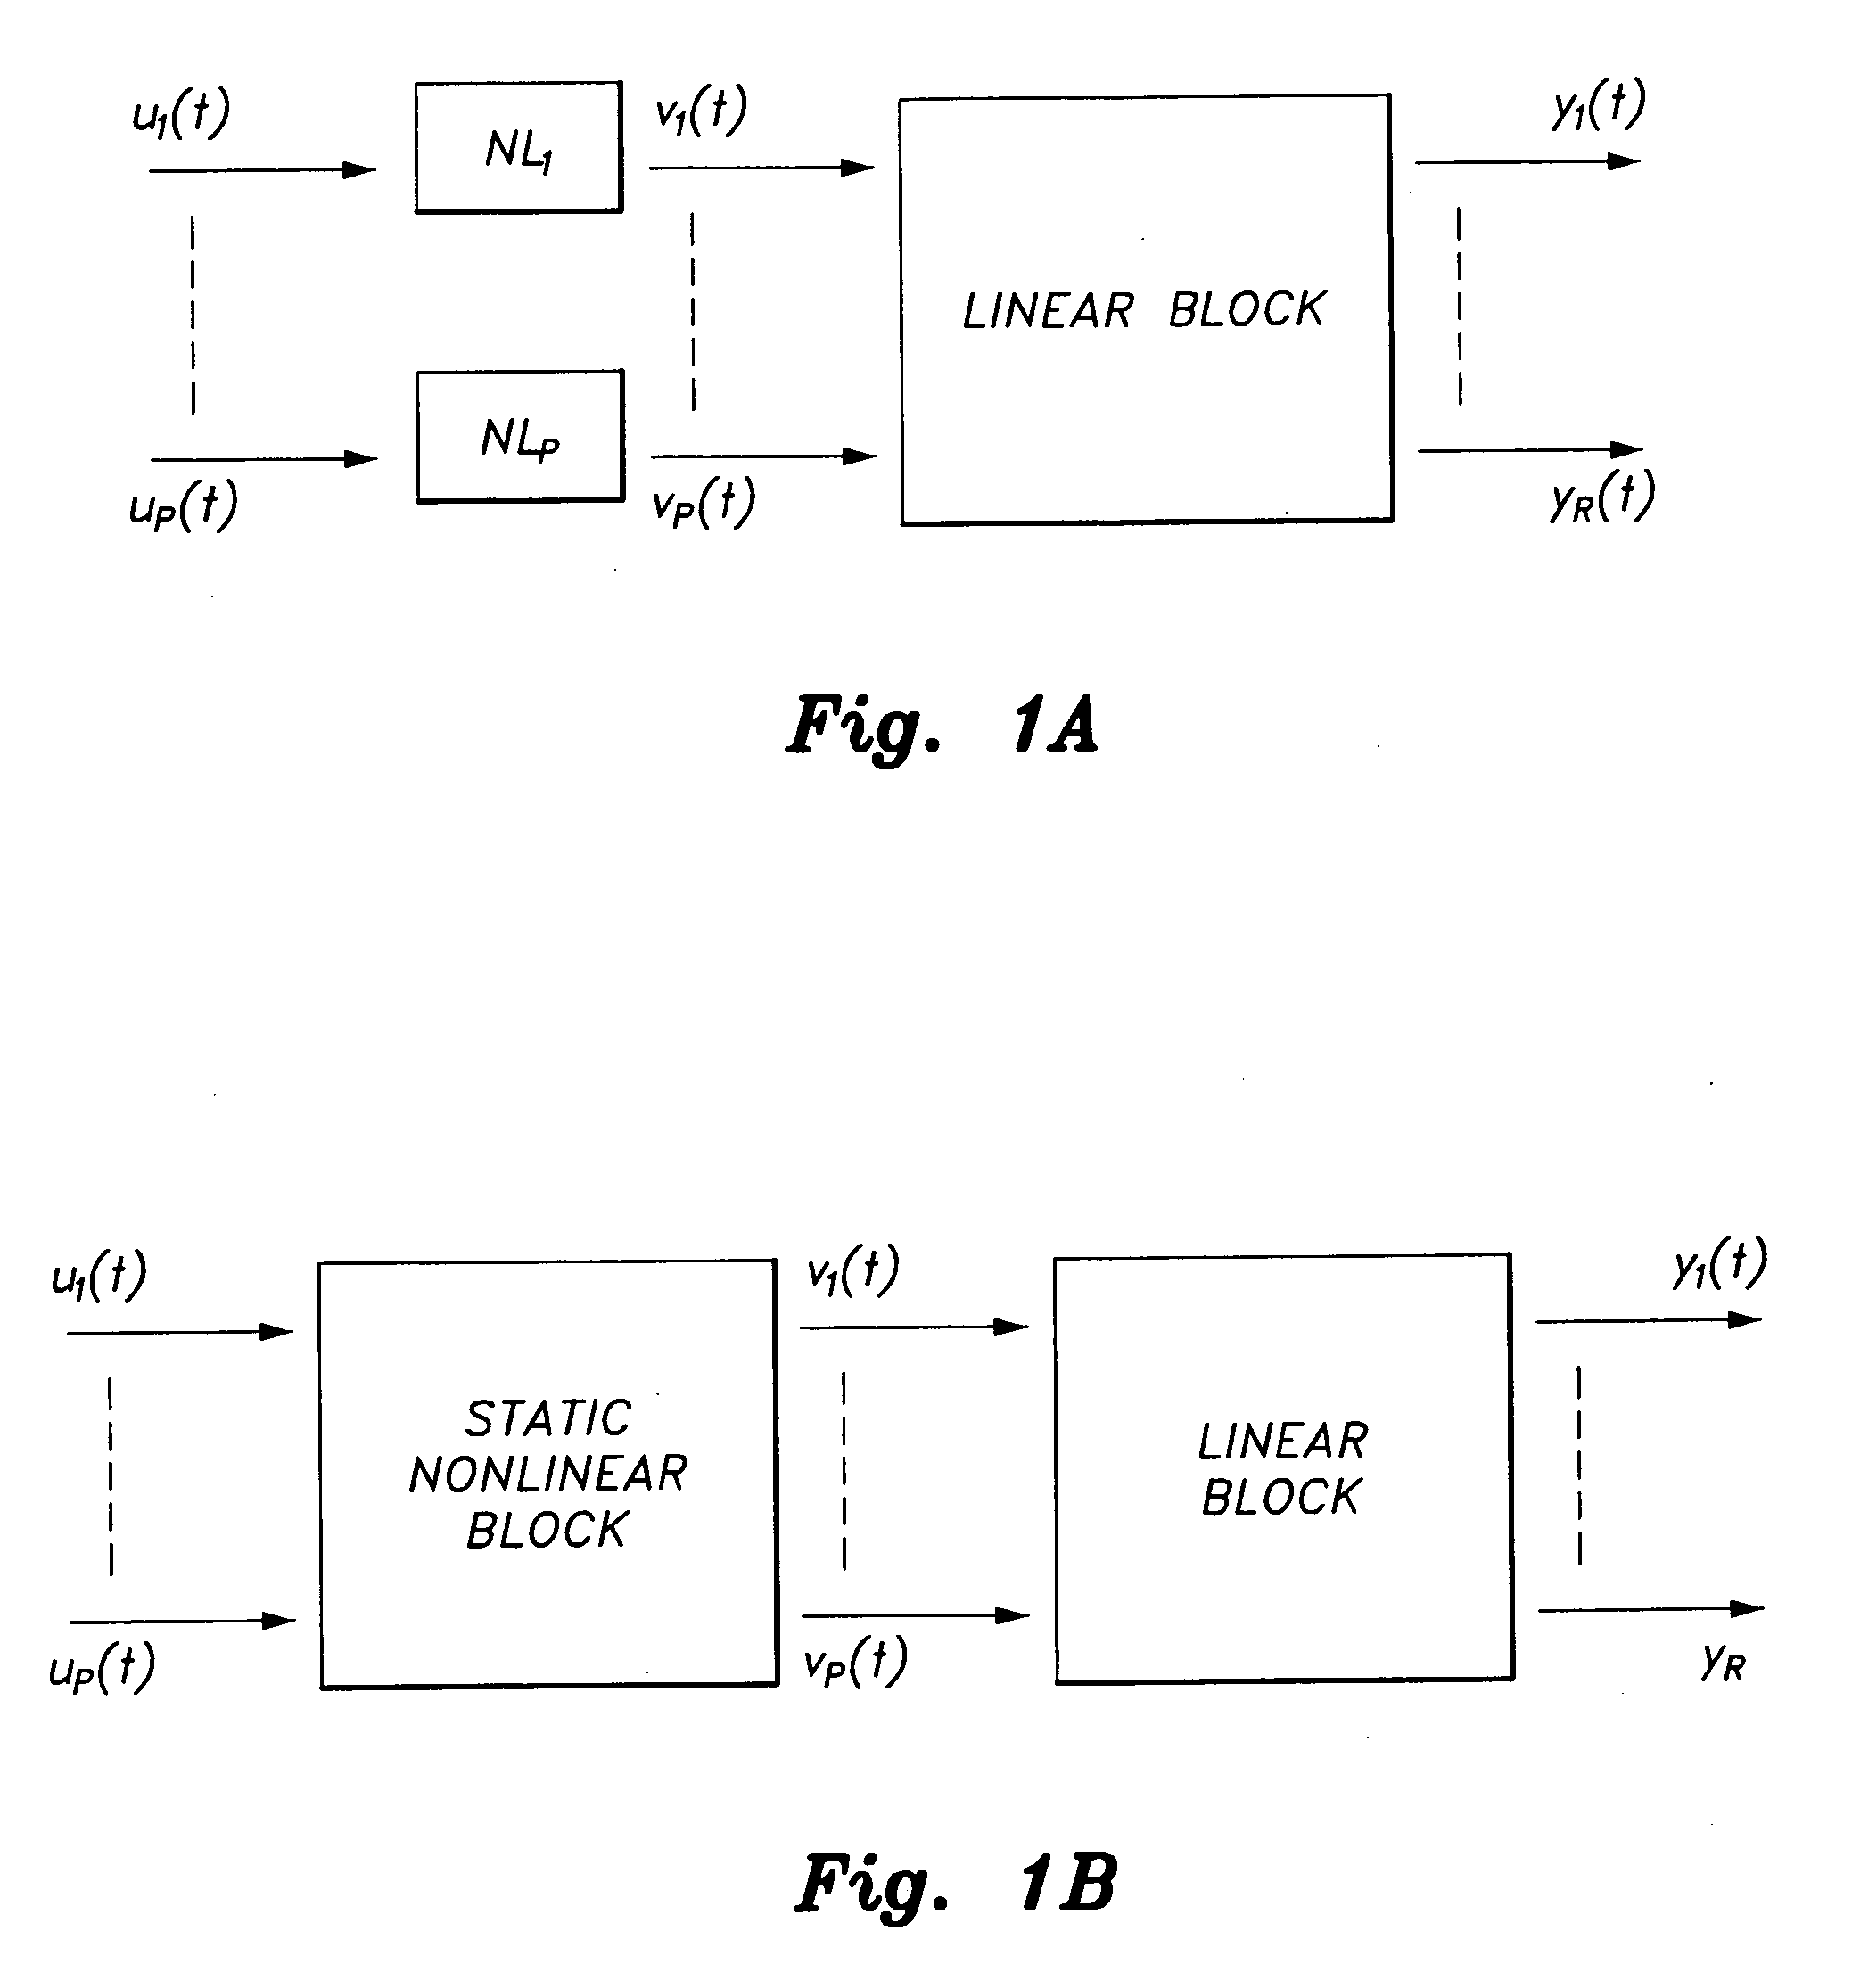 Method for hammerstein modeling of steam generator plant